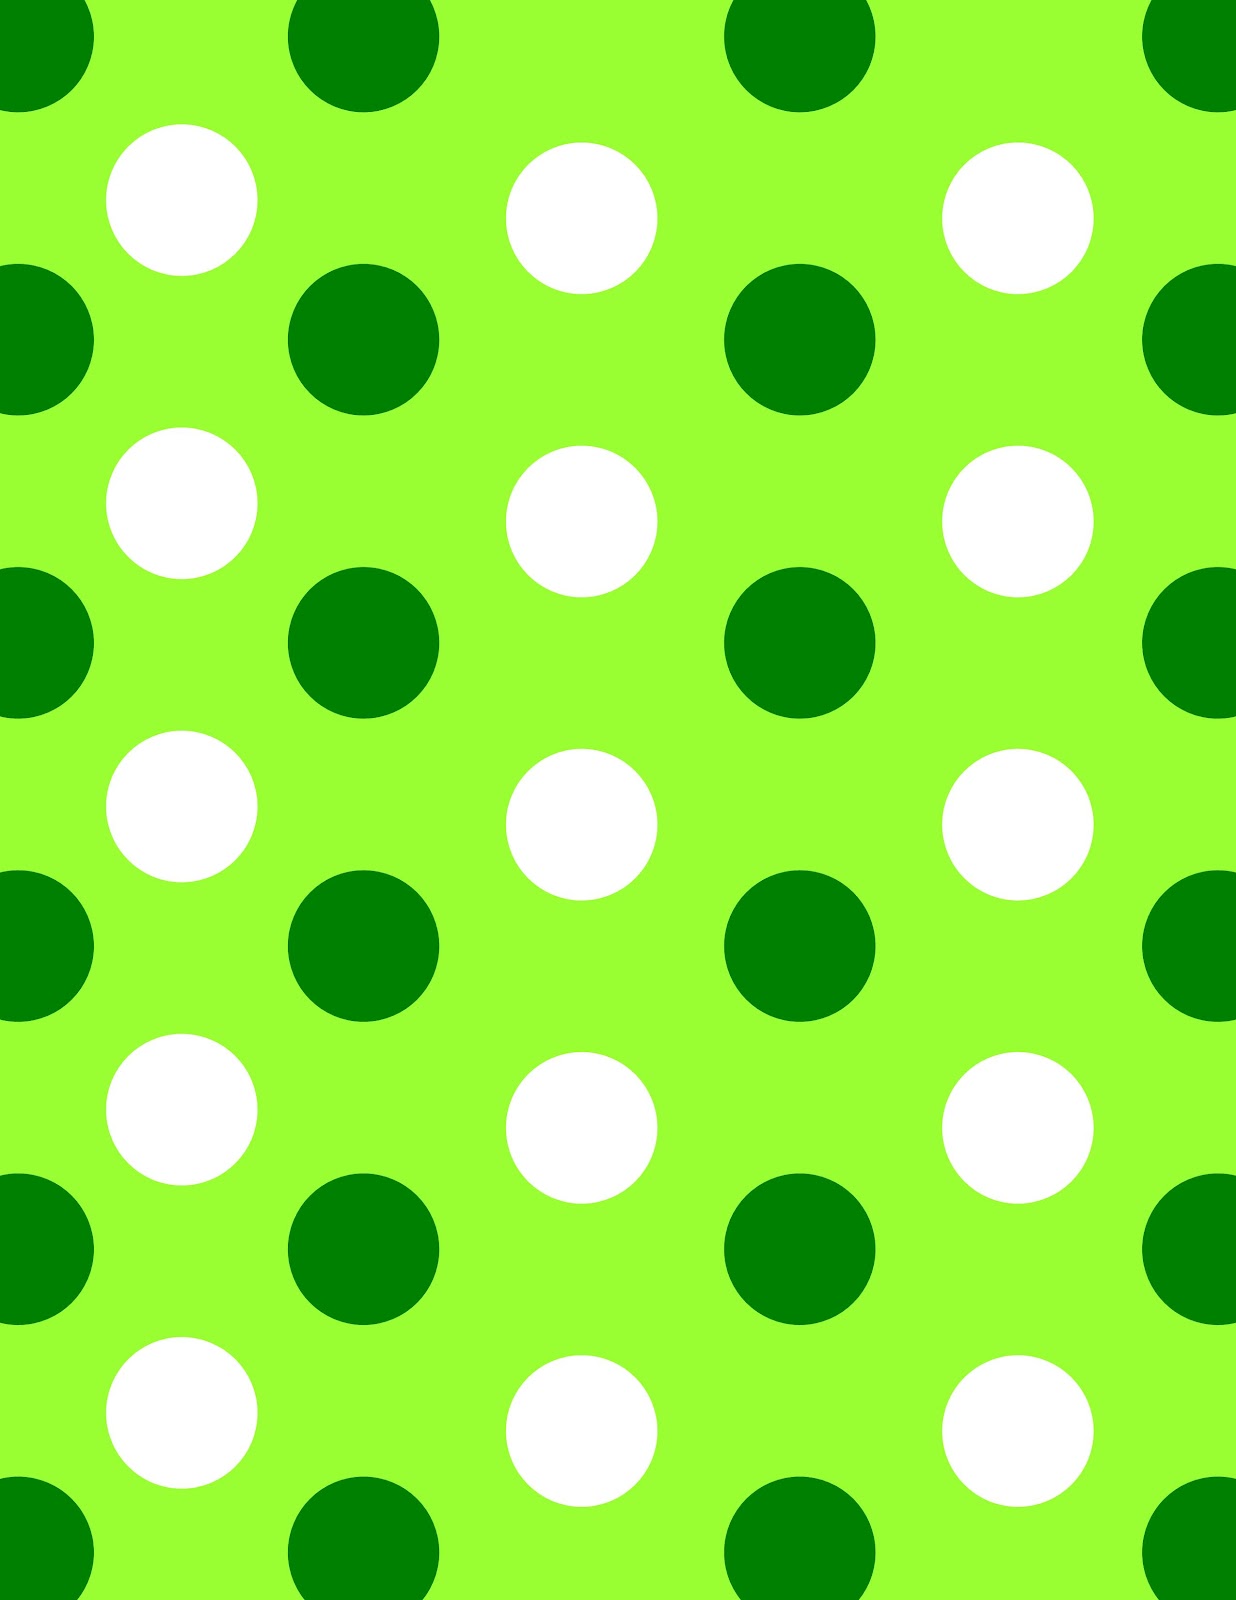 Green Polka Dot Border - ClipArt Best